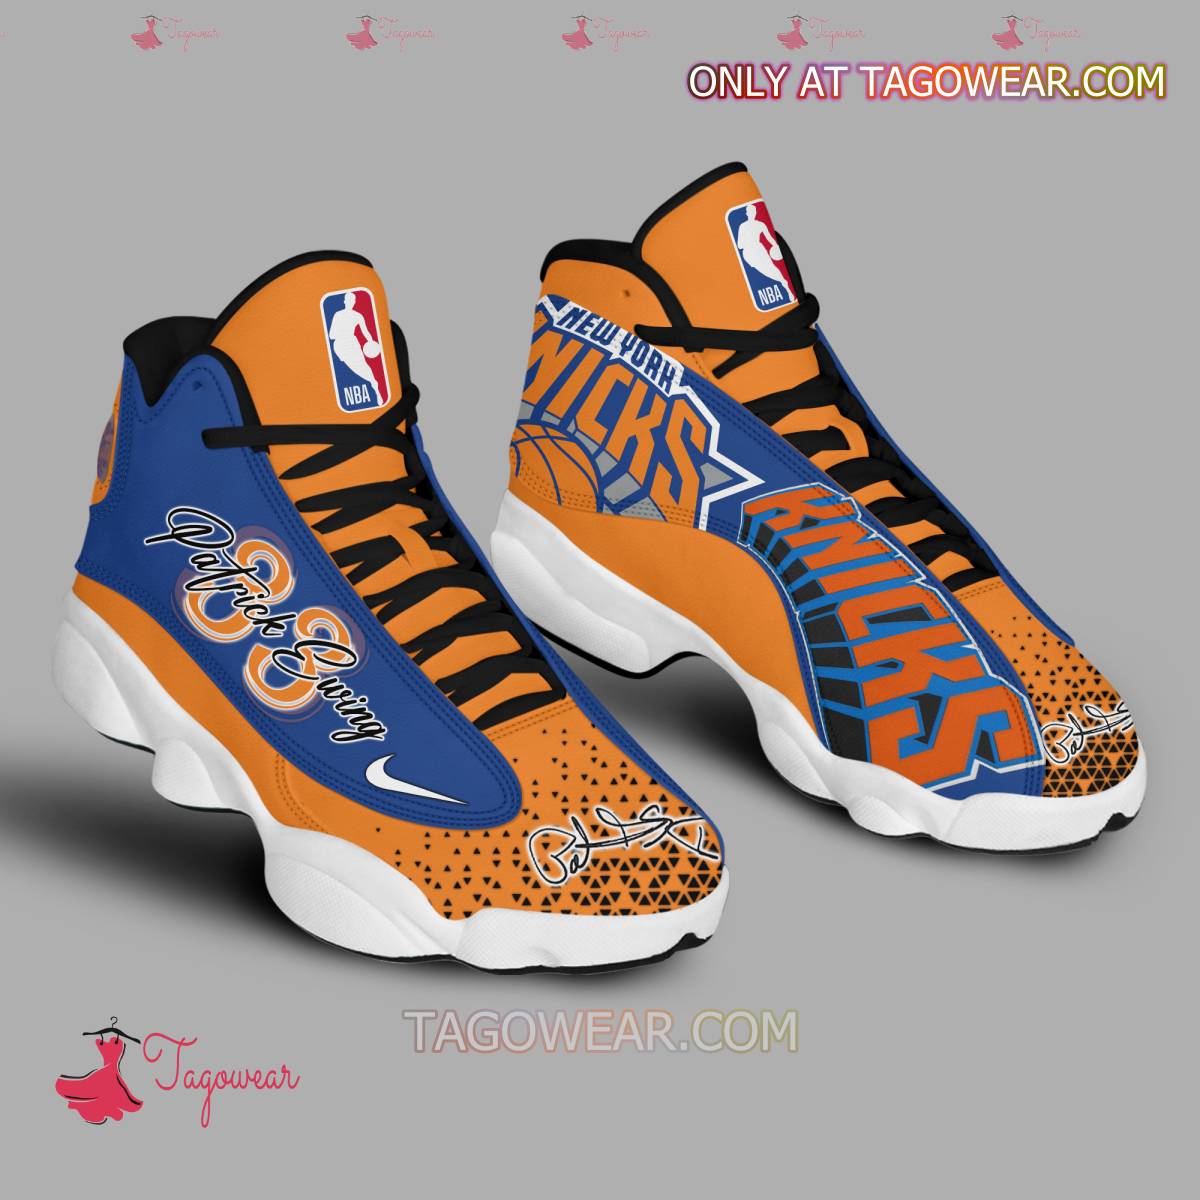 Patrick Ewing New York Knicks NBA Signature Air Jordan 13 Shoes